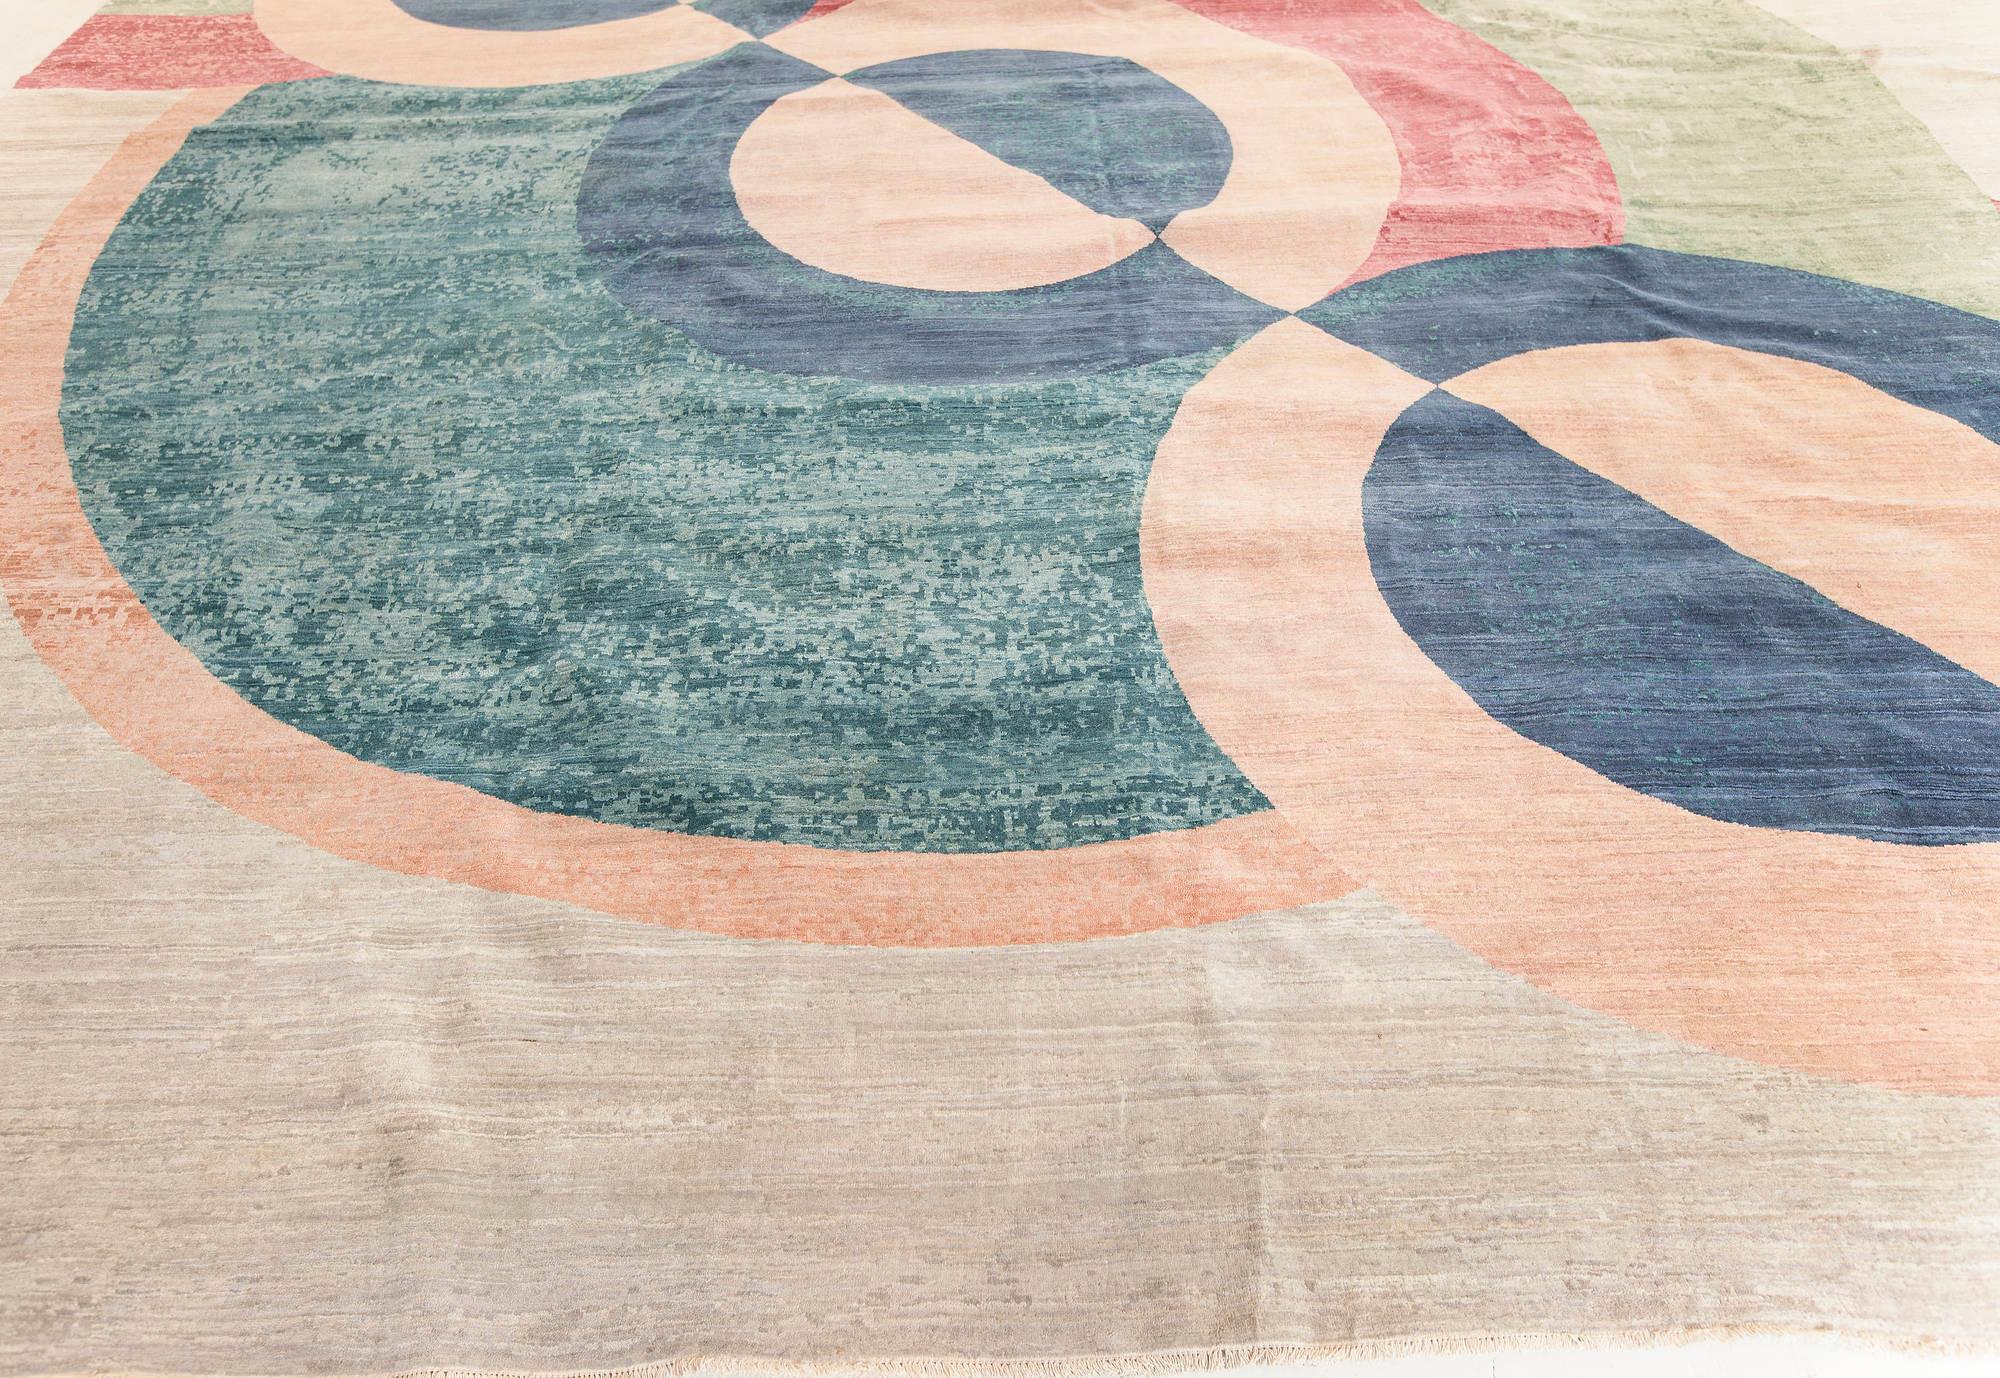 Zeitgenössisch inspirierter Art-Déco-Teppich von Doris Leslie Blau
Die Größe: 474 632 cm (15'7 Zoll) 20'9 Zoll.
Doris Leslie Blau besitzt eine außergewöhnliche Sammlung von originalen modernen Teppichen in vielen Stilen und Materialien.